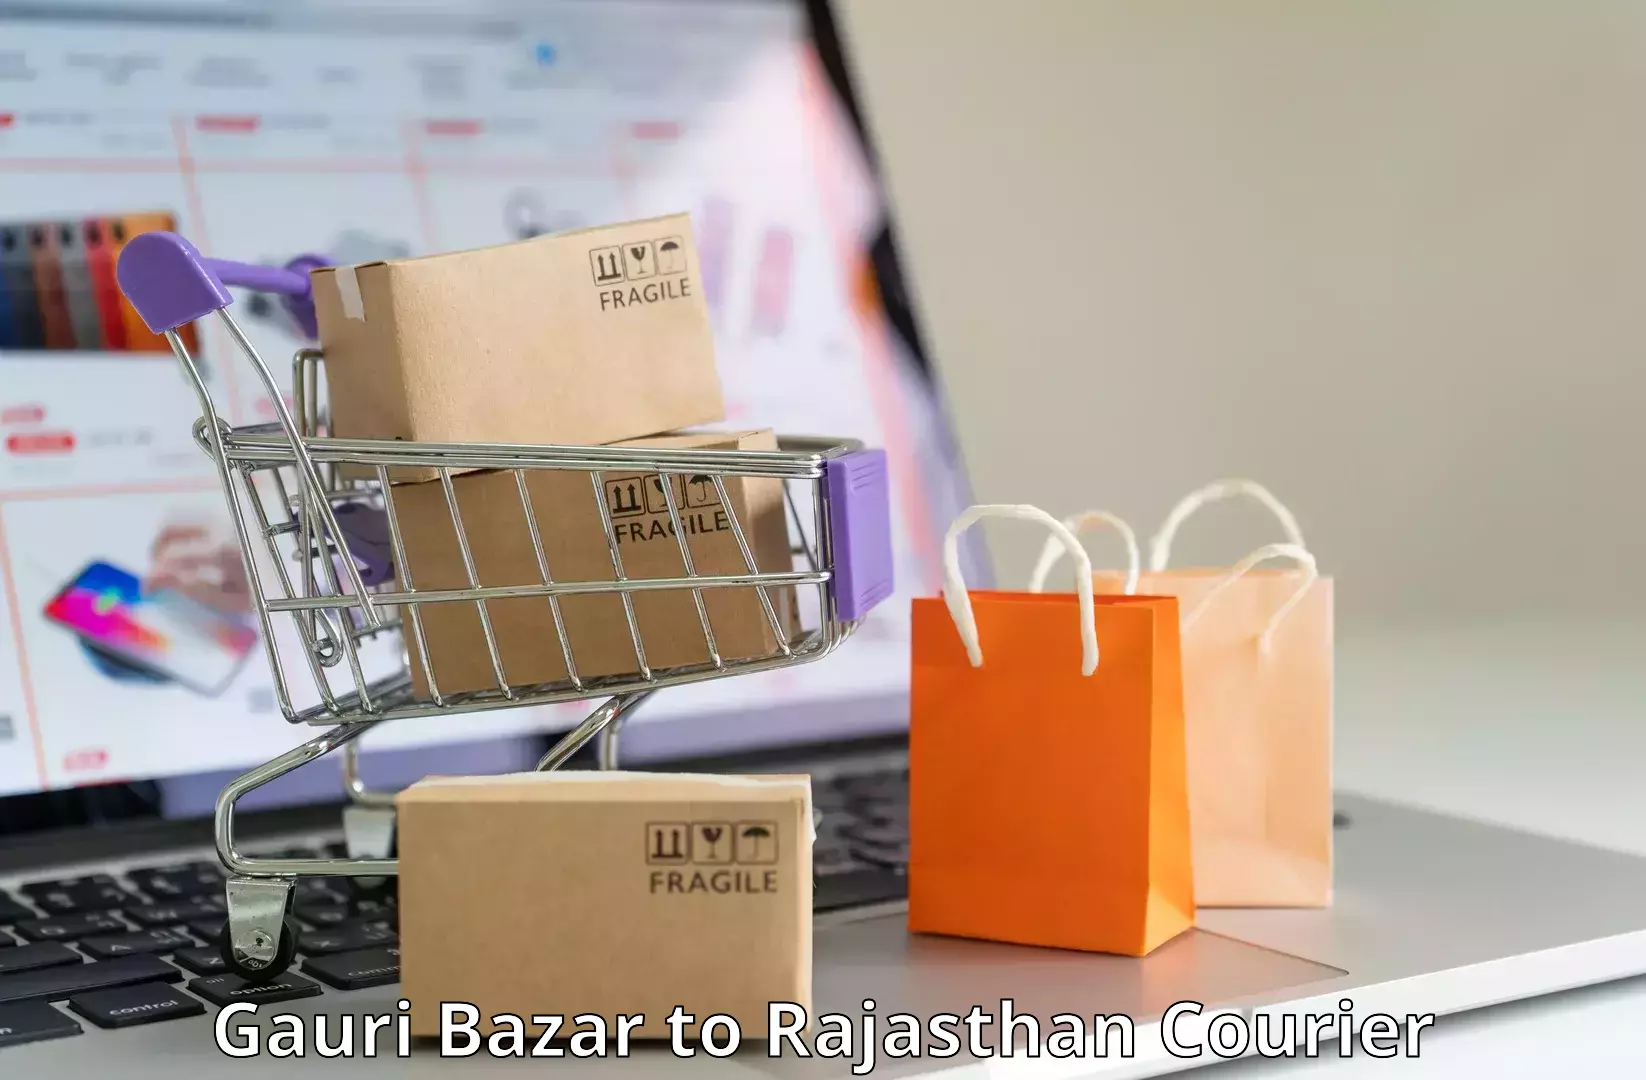 Cargo courier service Gauri Bazar to Jodhpur